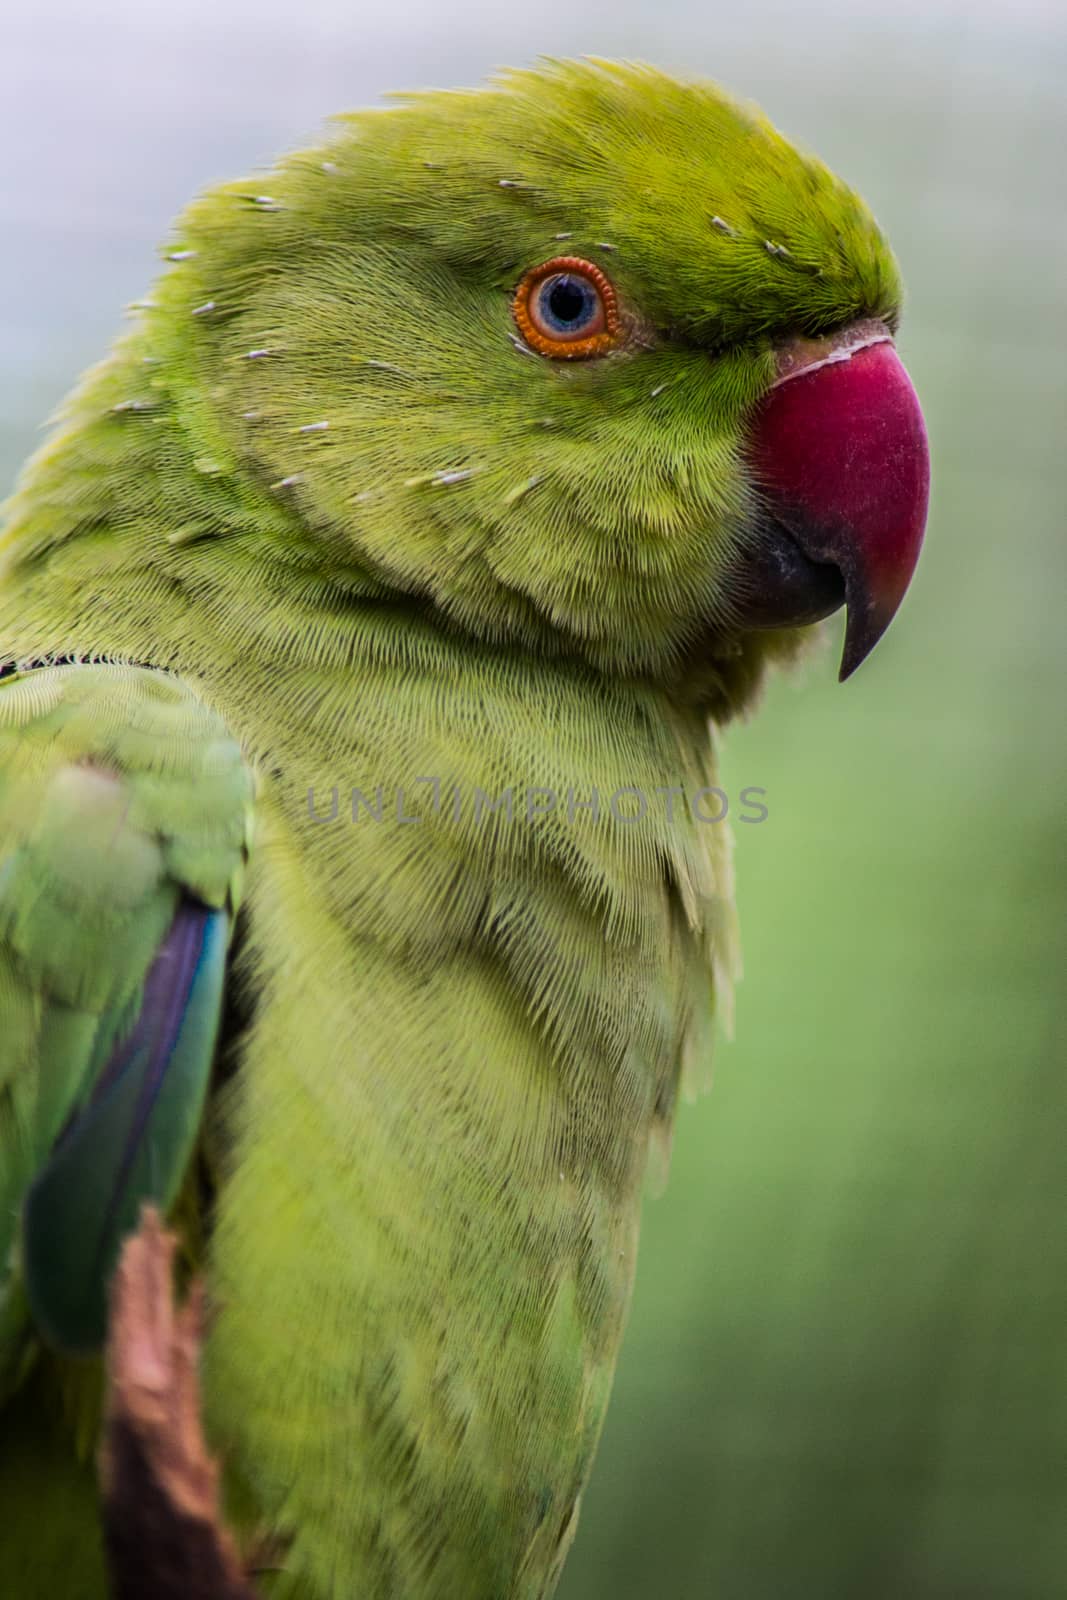 Indian Ringneck Parakeet Rose-Ringed Parakeet in close-up